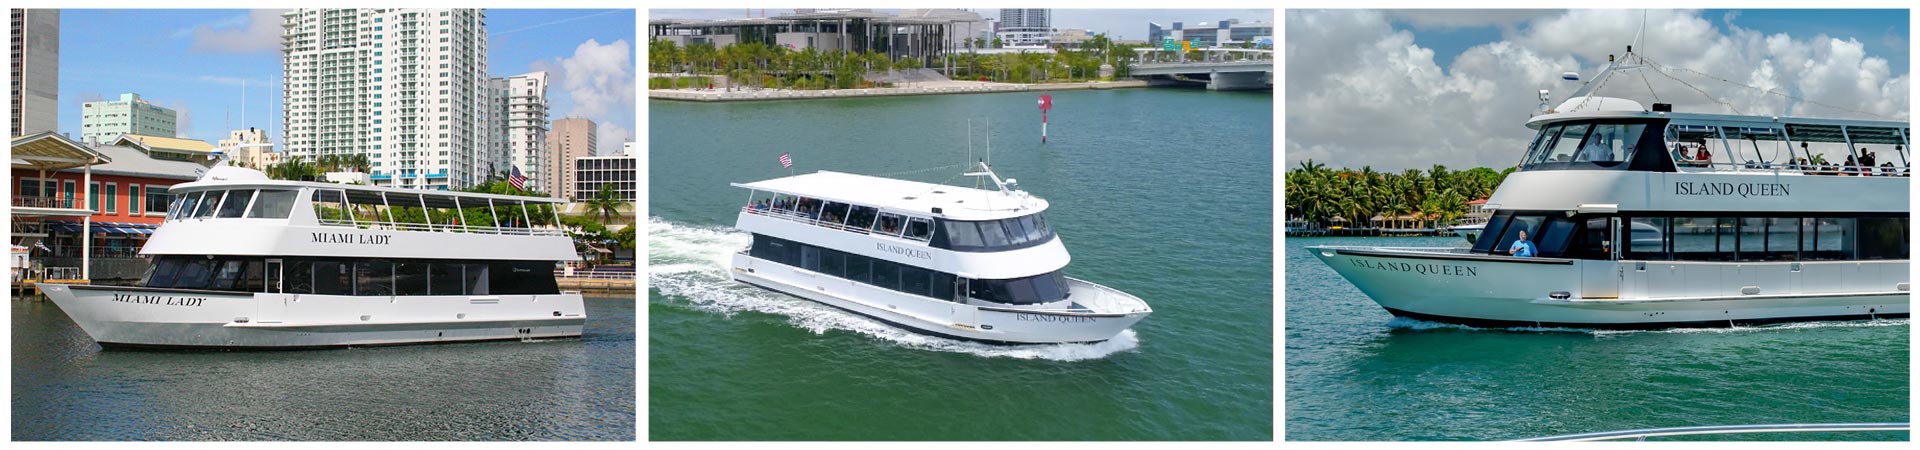 Island Queen Cruises & Tours Miami